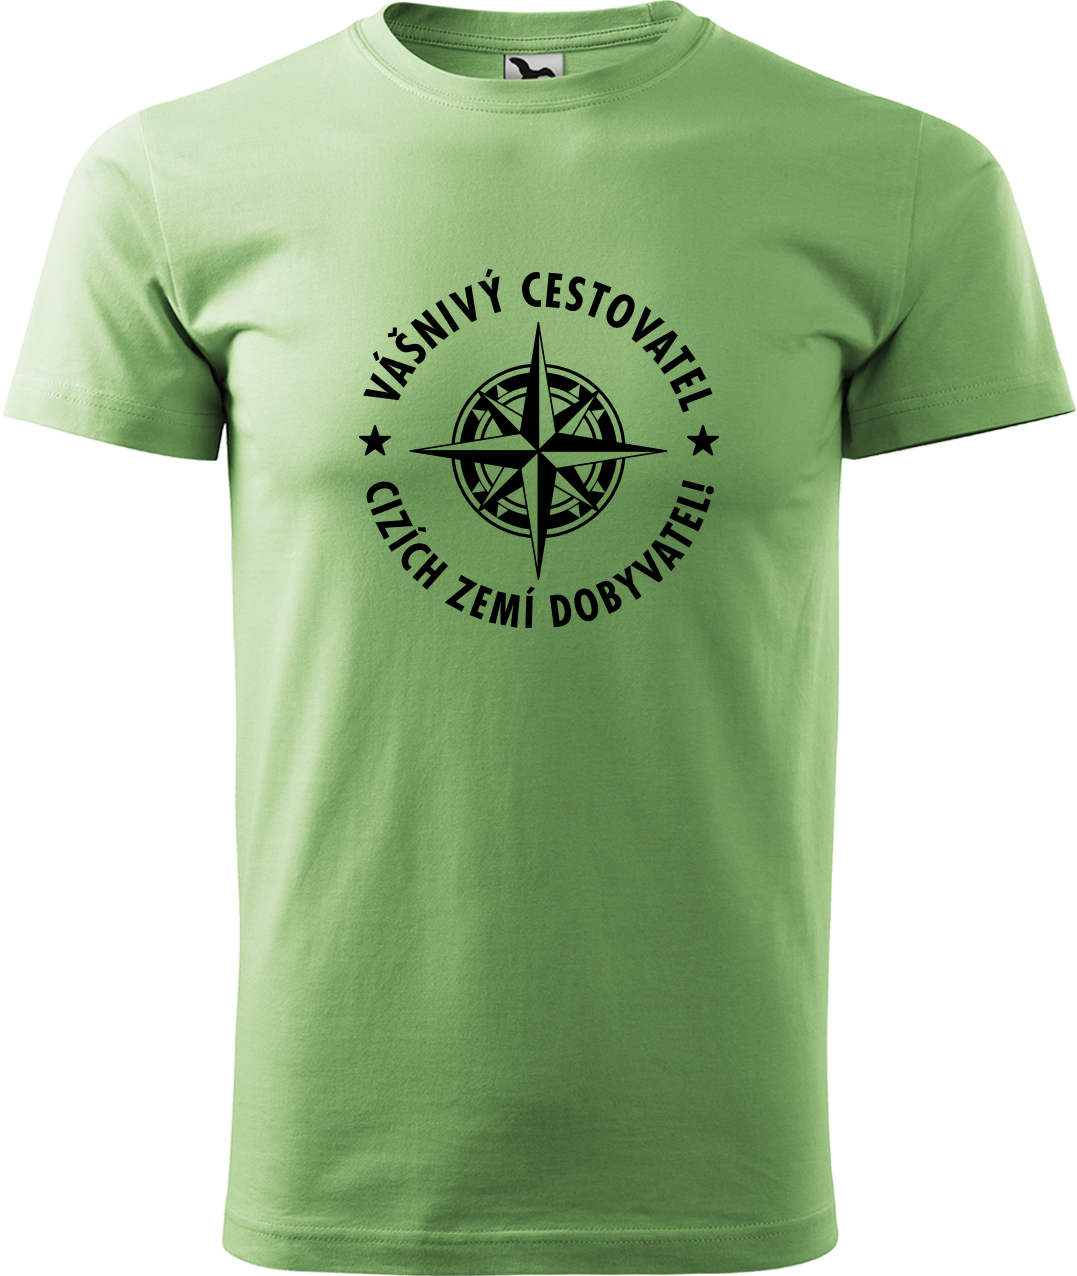 Pánské cestovatelské tričko - Vášnivý cestovatel, cizích zemí dobyvatel Velikost: 4XL, Barva: Trávově zelená (39), Střih: pánský